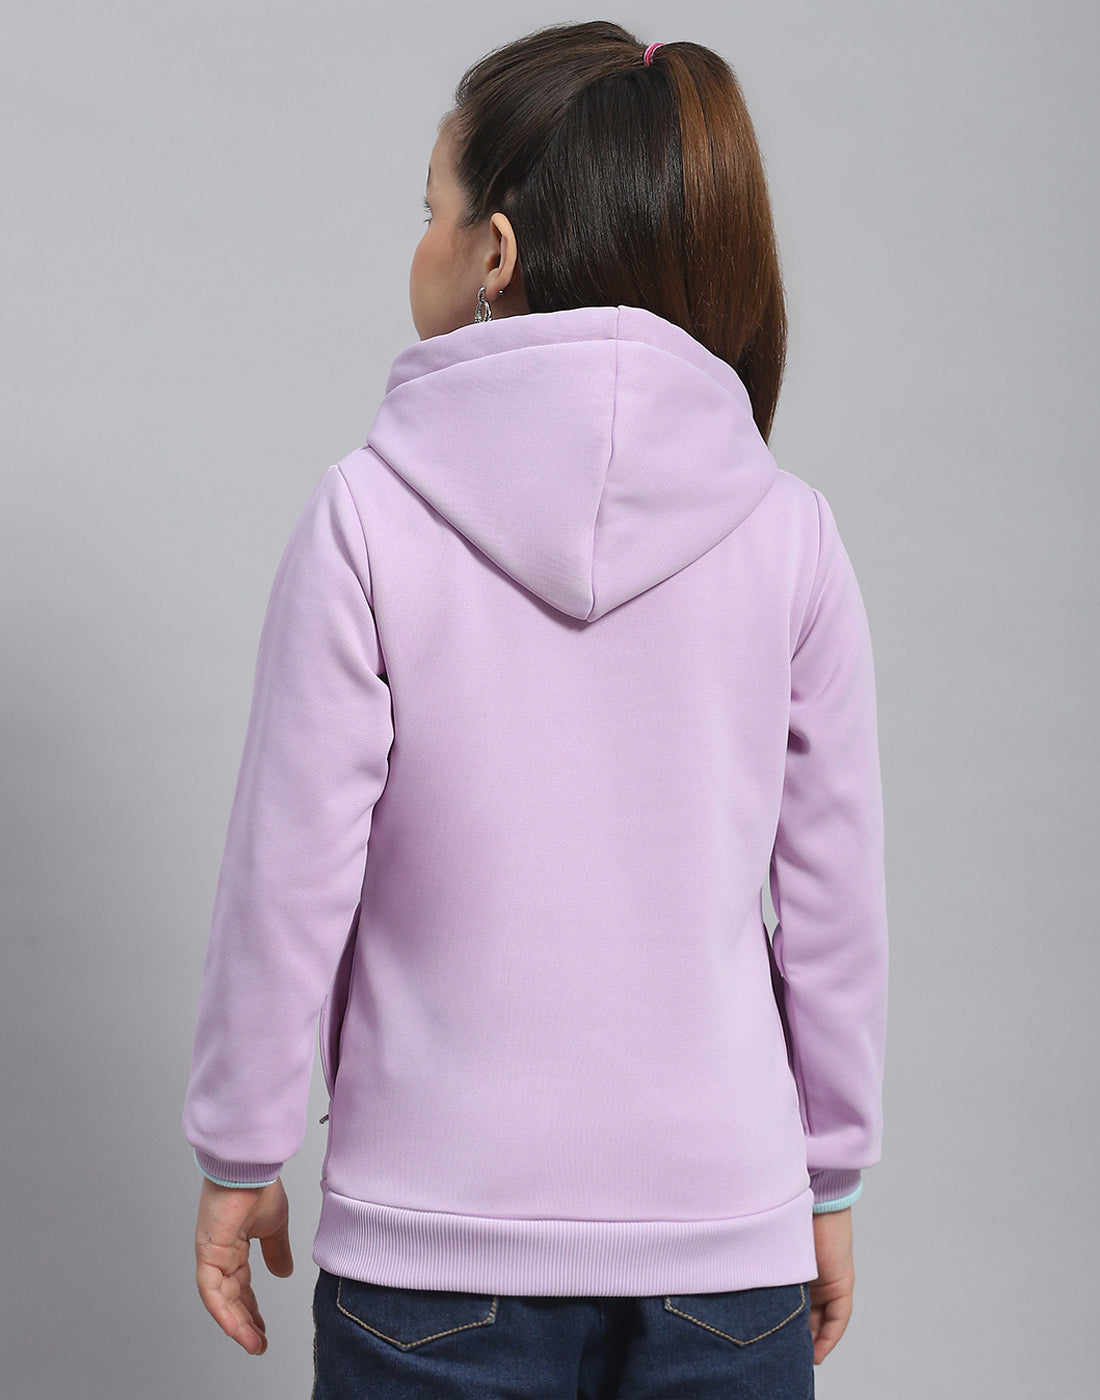 Girls Purple Printed Hooded Full Sleeve Sweatshirt